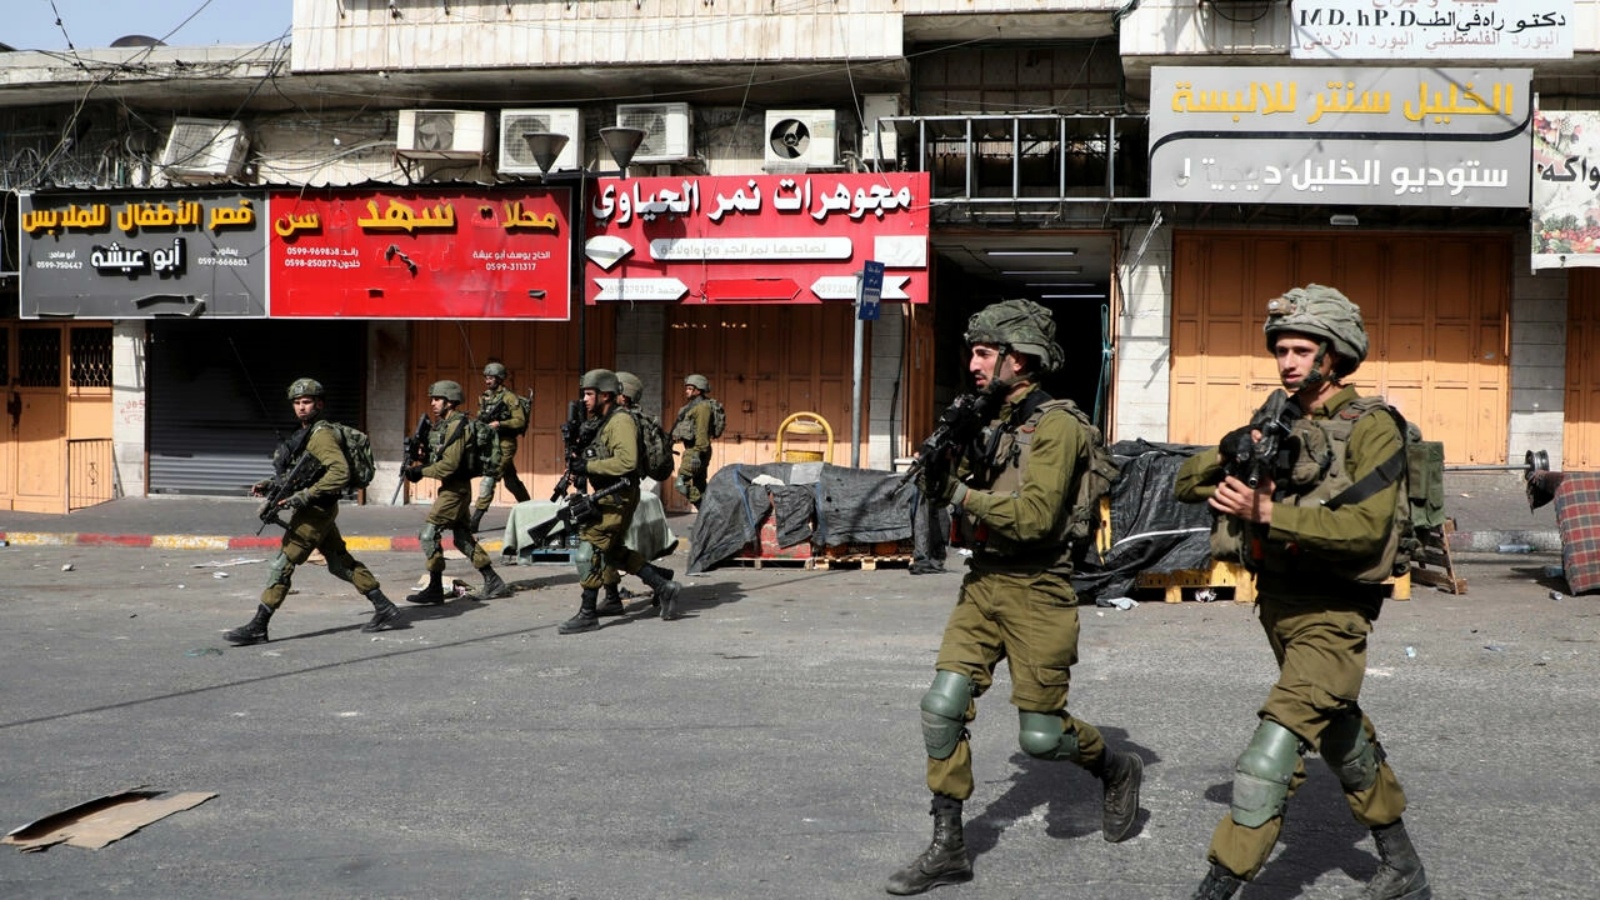 جنود إسرائيليون يمشون خلال مواجهات مع متظاهرين فلسطينيين في مدينة الخليل في الضفة الغربية المحتلة في 29 مايو 2022 ضد مسيرة الأعلام الإسرائيلية في القدس الشرقية المحتلة